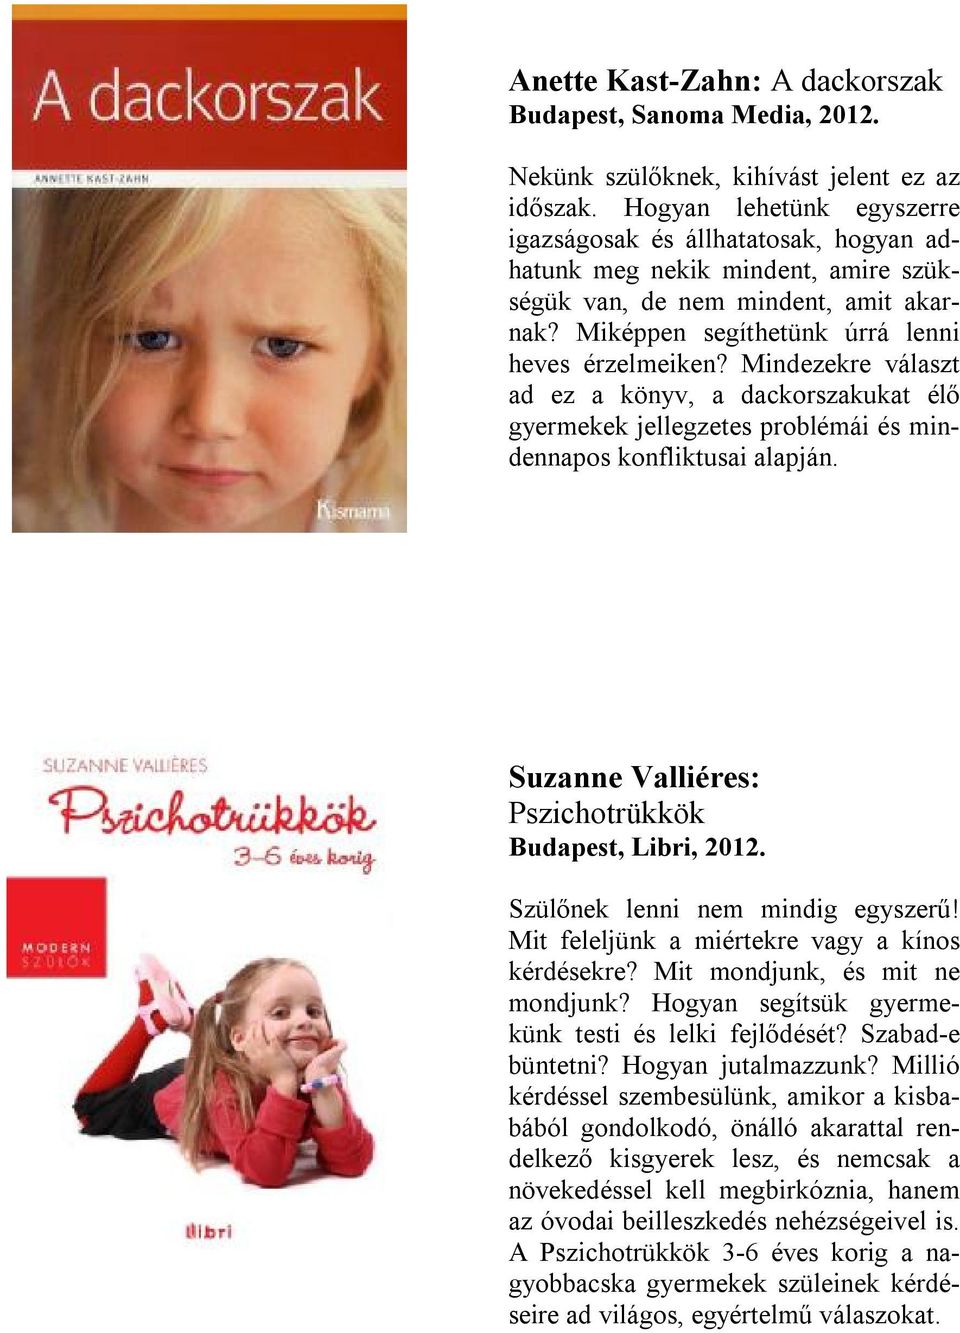 Mindezekre választ ad ez a könyv, a dackorszakukat élő gyermekek jellegzetes problémái és mindennapos konfliktusai alapján. Suzanne Valliéres: Pszichotrükkök Budapest, Libri, 2012.